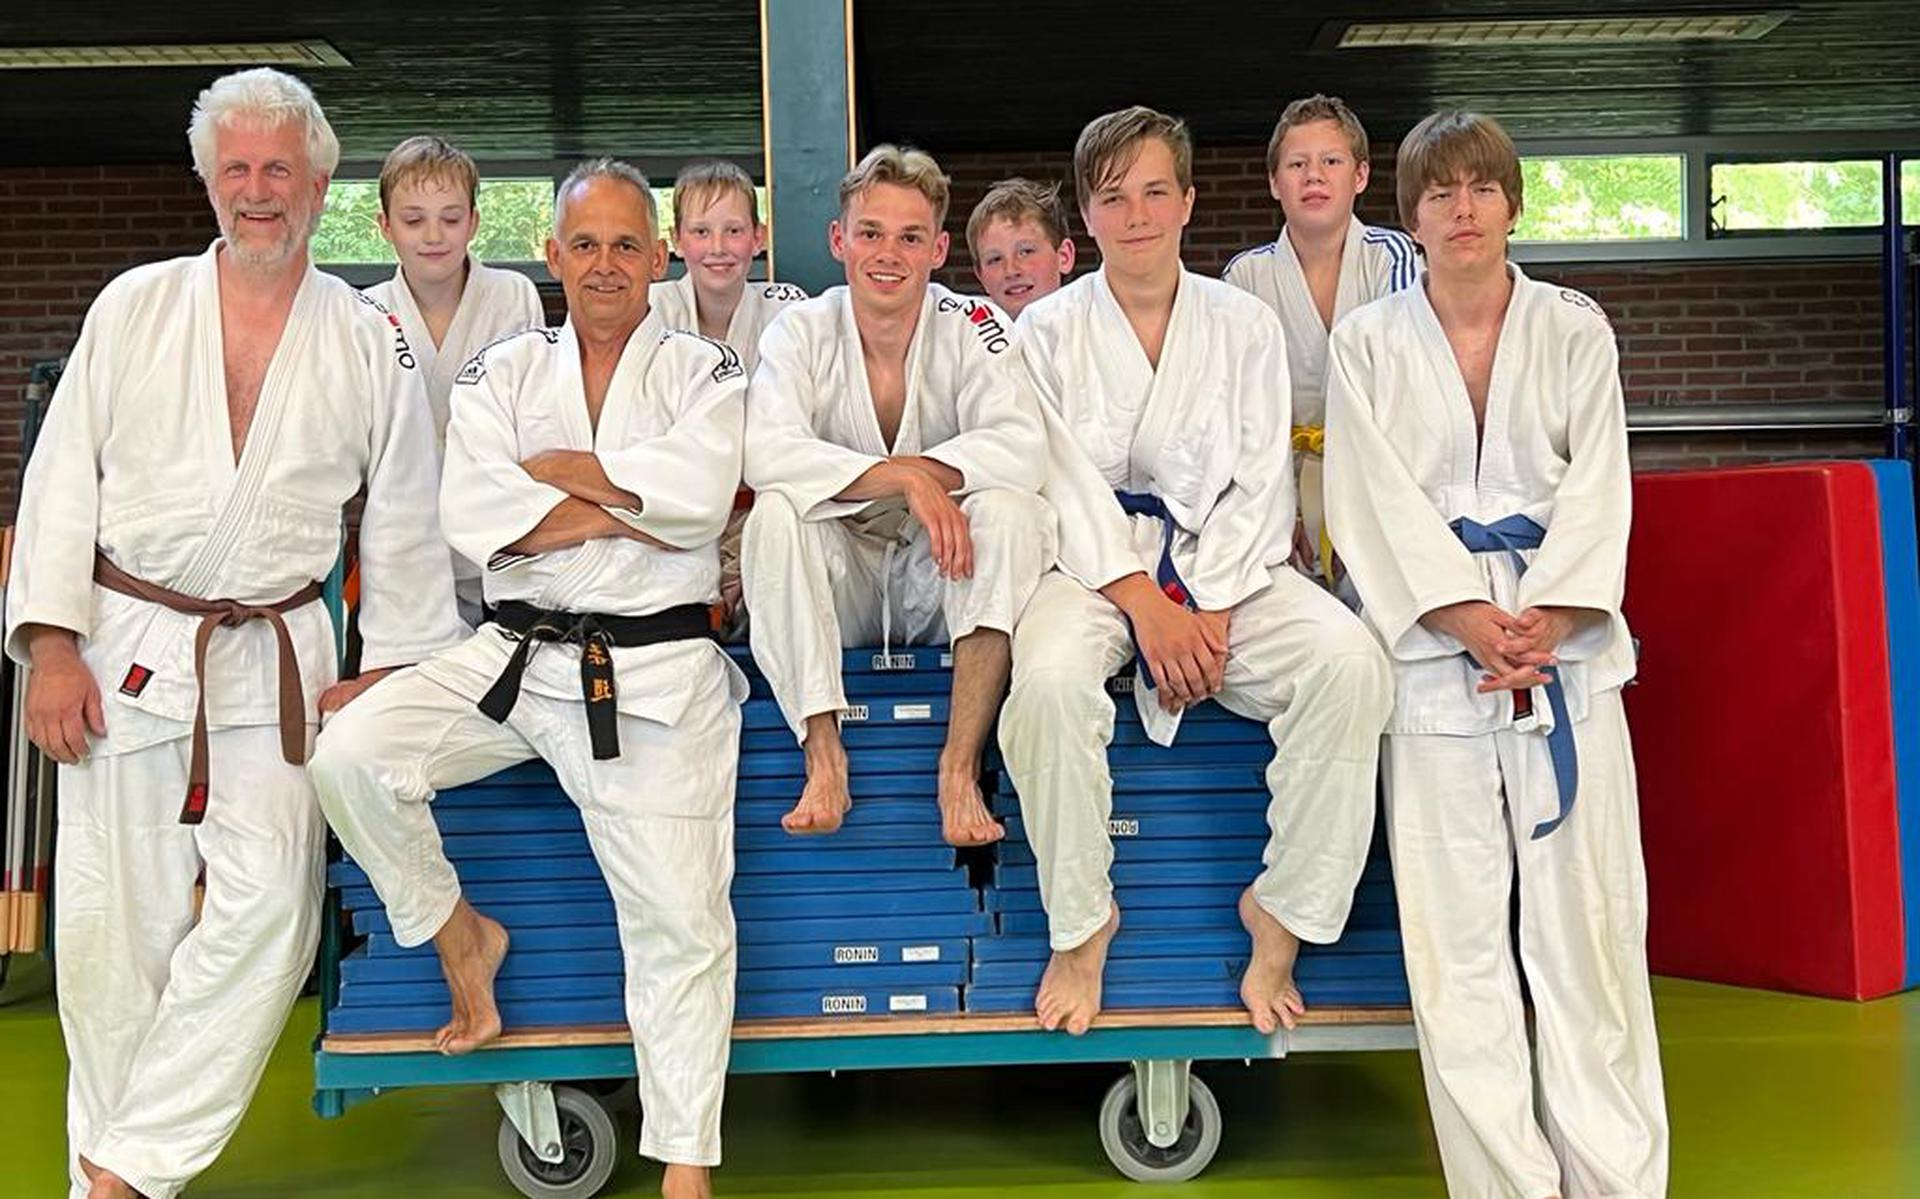 Ronald Dohmen neemt na 20 jaar afscheid als trainer van ASVD Judo